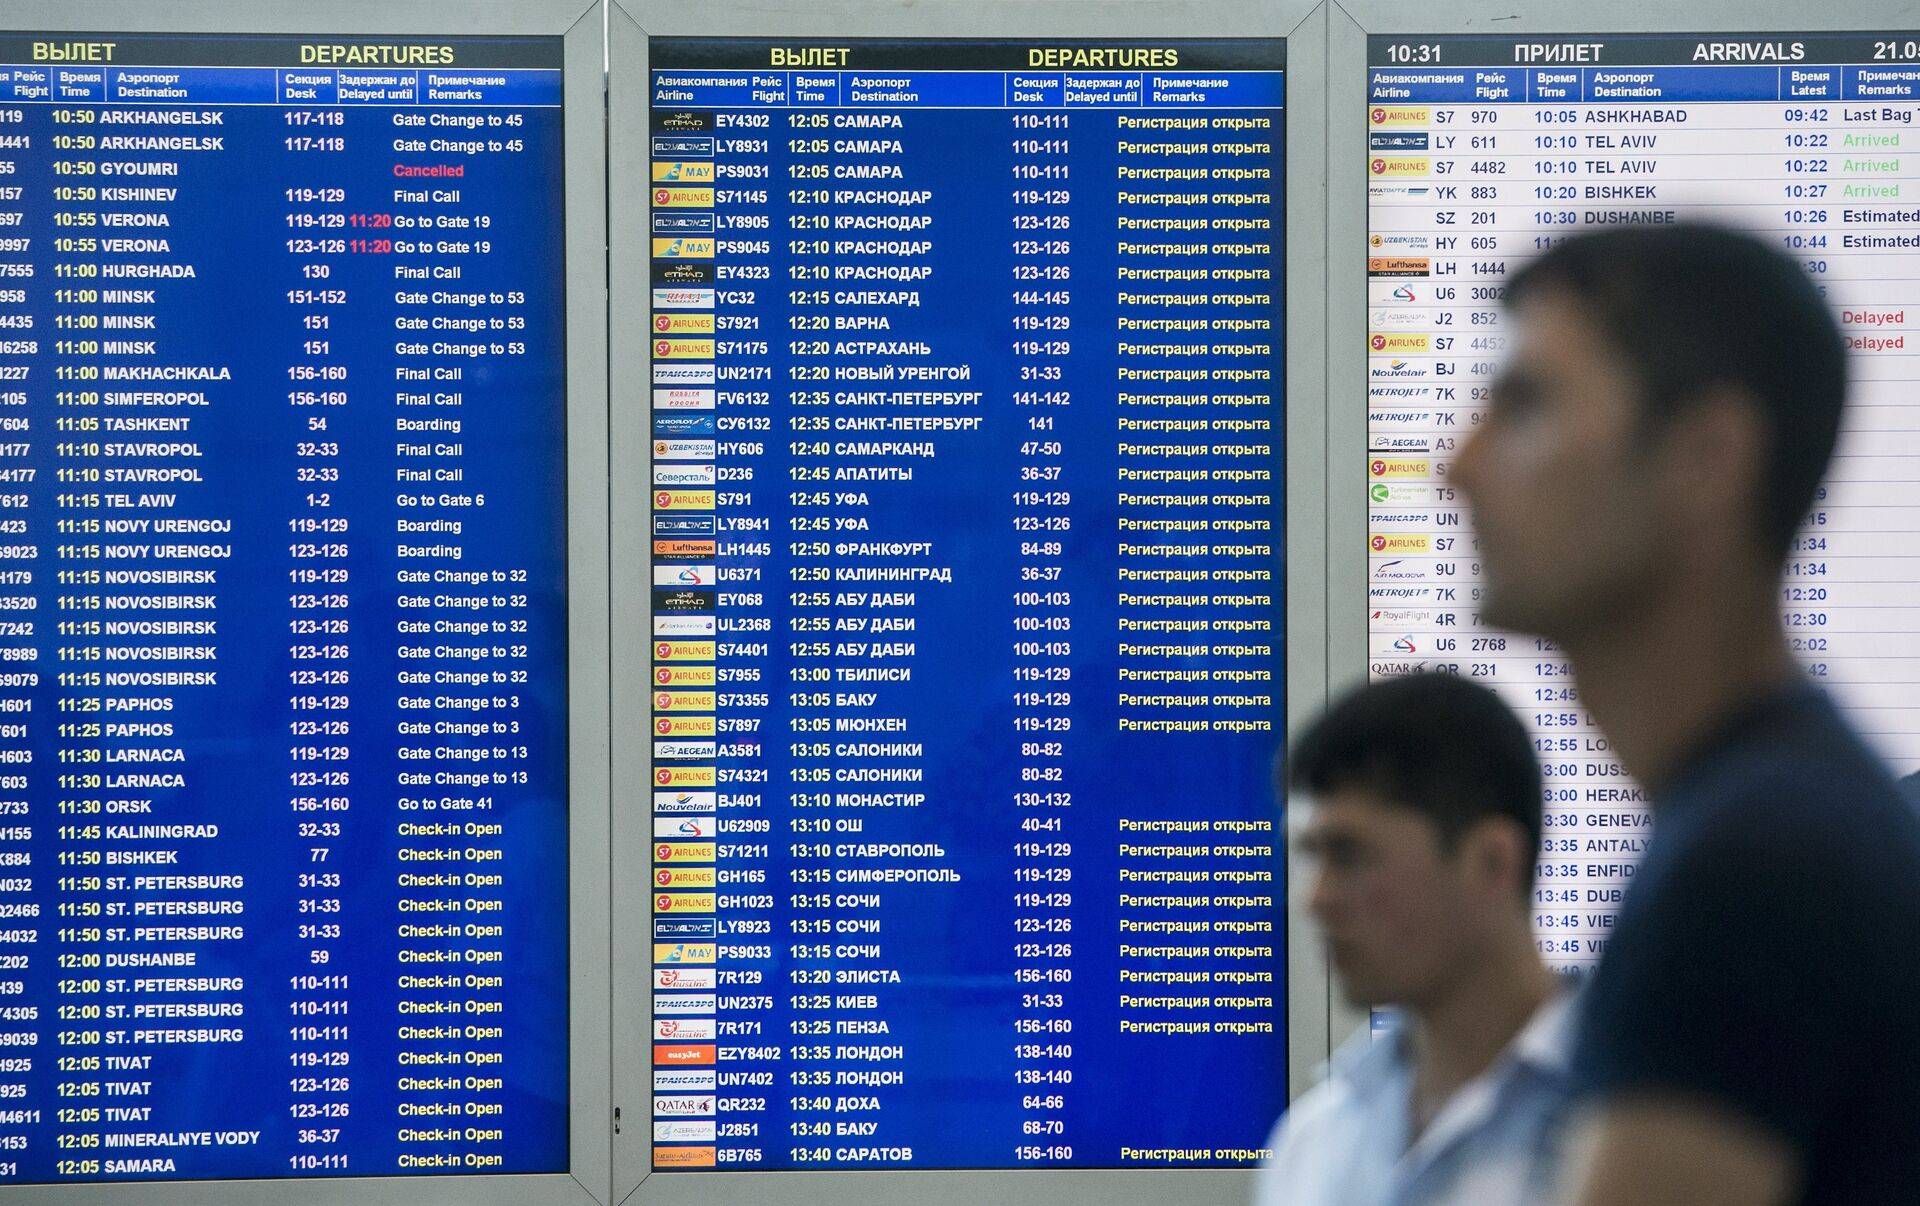 Аэропорт абу-даби: онлайн табло вылета и прилета, официальный сайт, расписание рейсов, схема терминалов